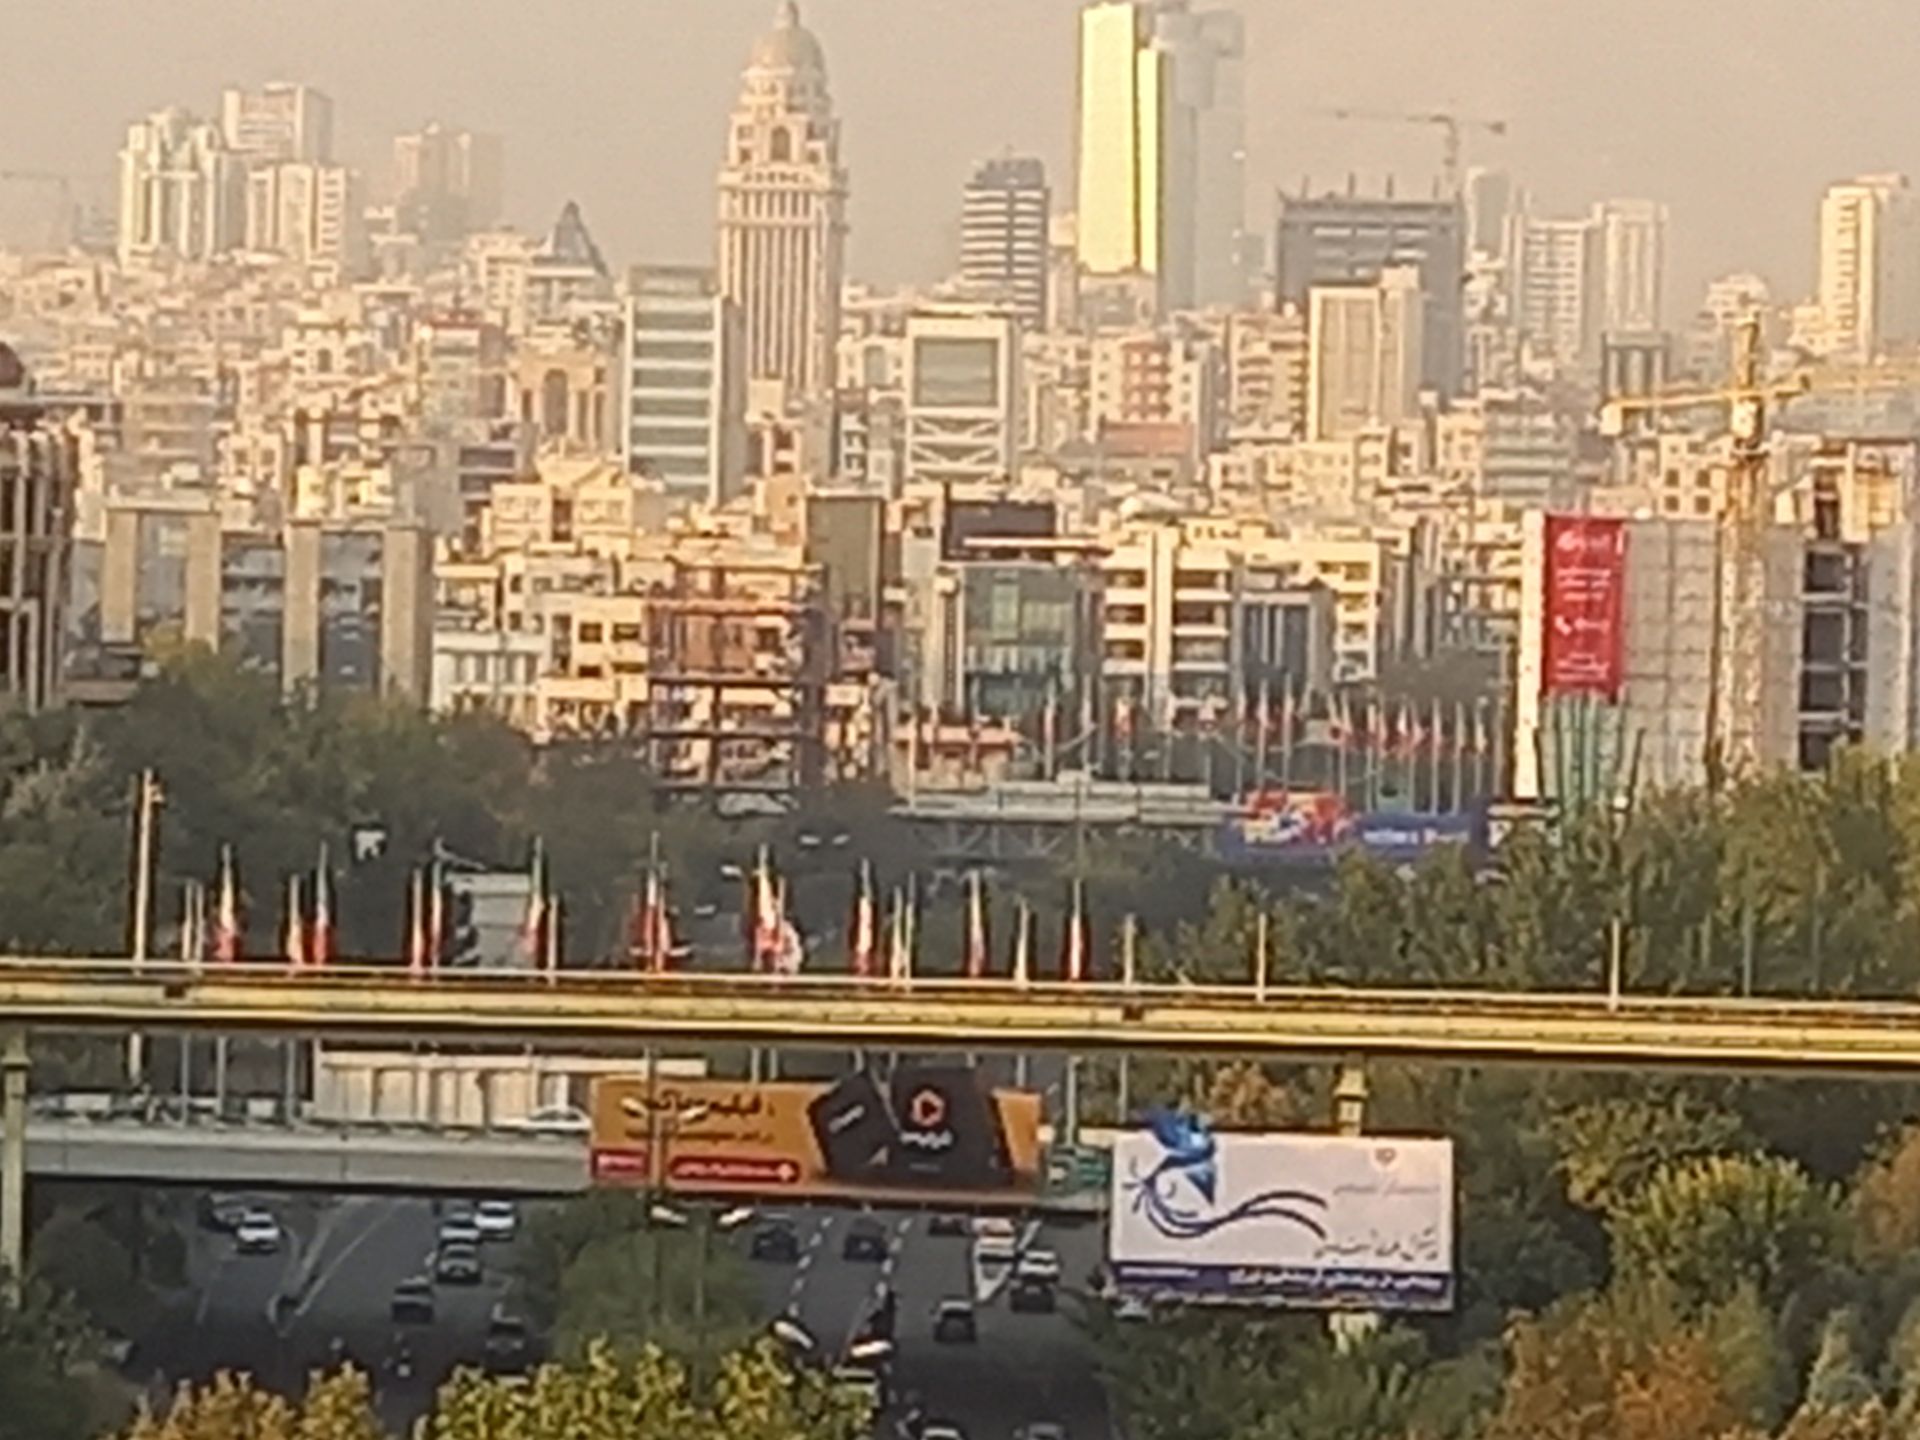 مرجع متخصصين ايران نمونه عكس 8x گلكسي A31 در طول روز - مانديشه متخصصينه تهران پل طبيعت پارك آب و آتش تهران